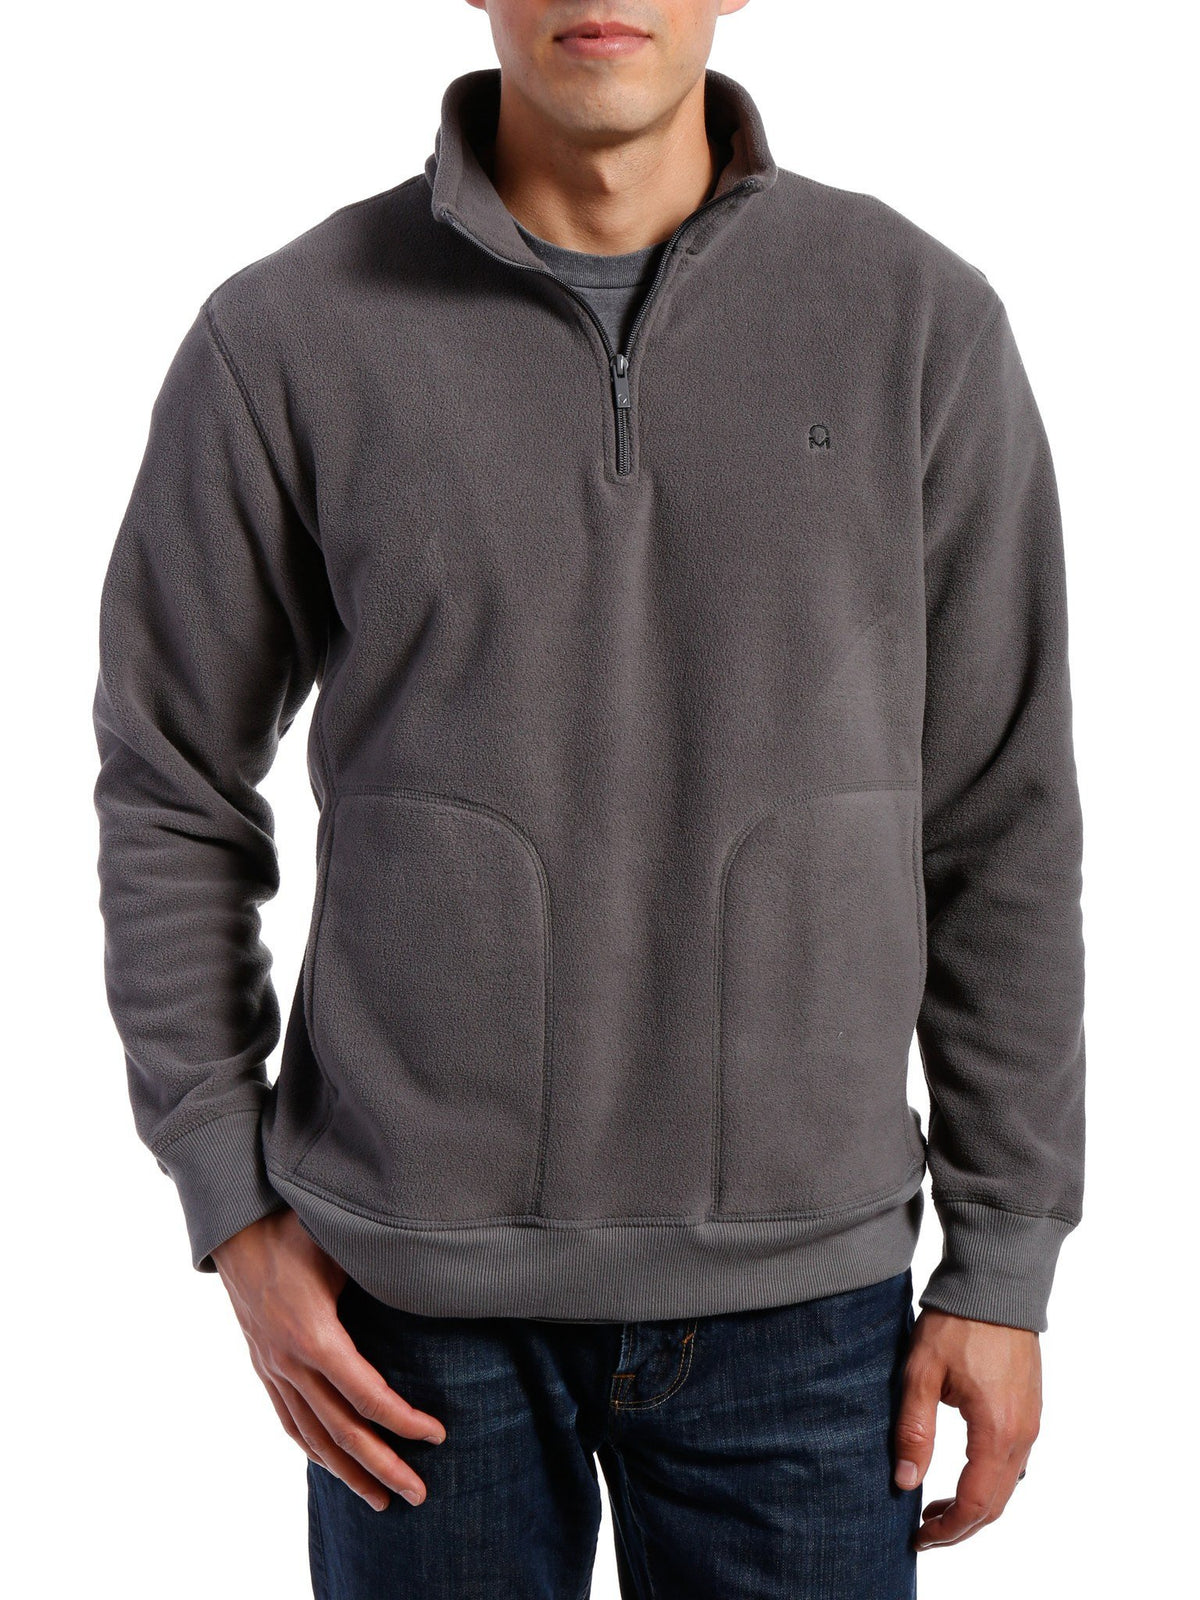 Men's Soft Fleece Half-Zip Pullover - Charcoal